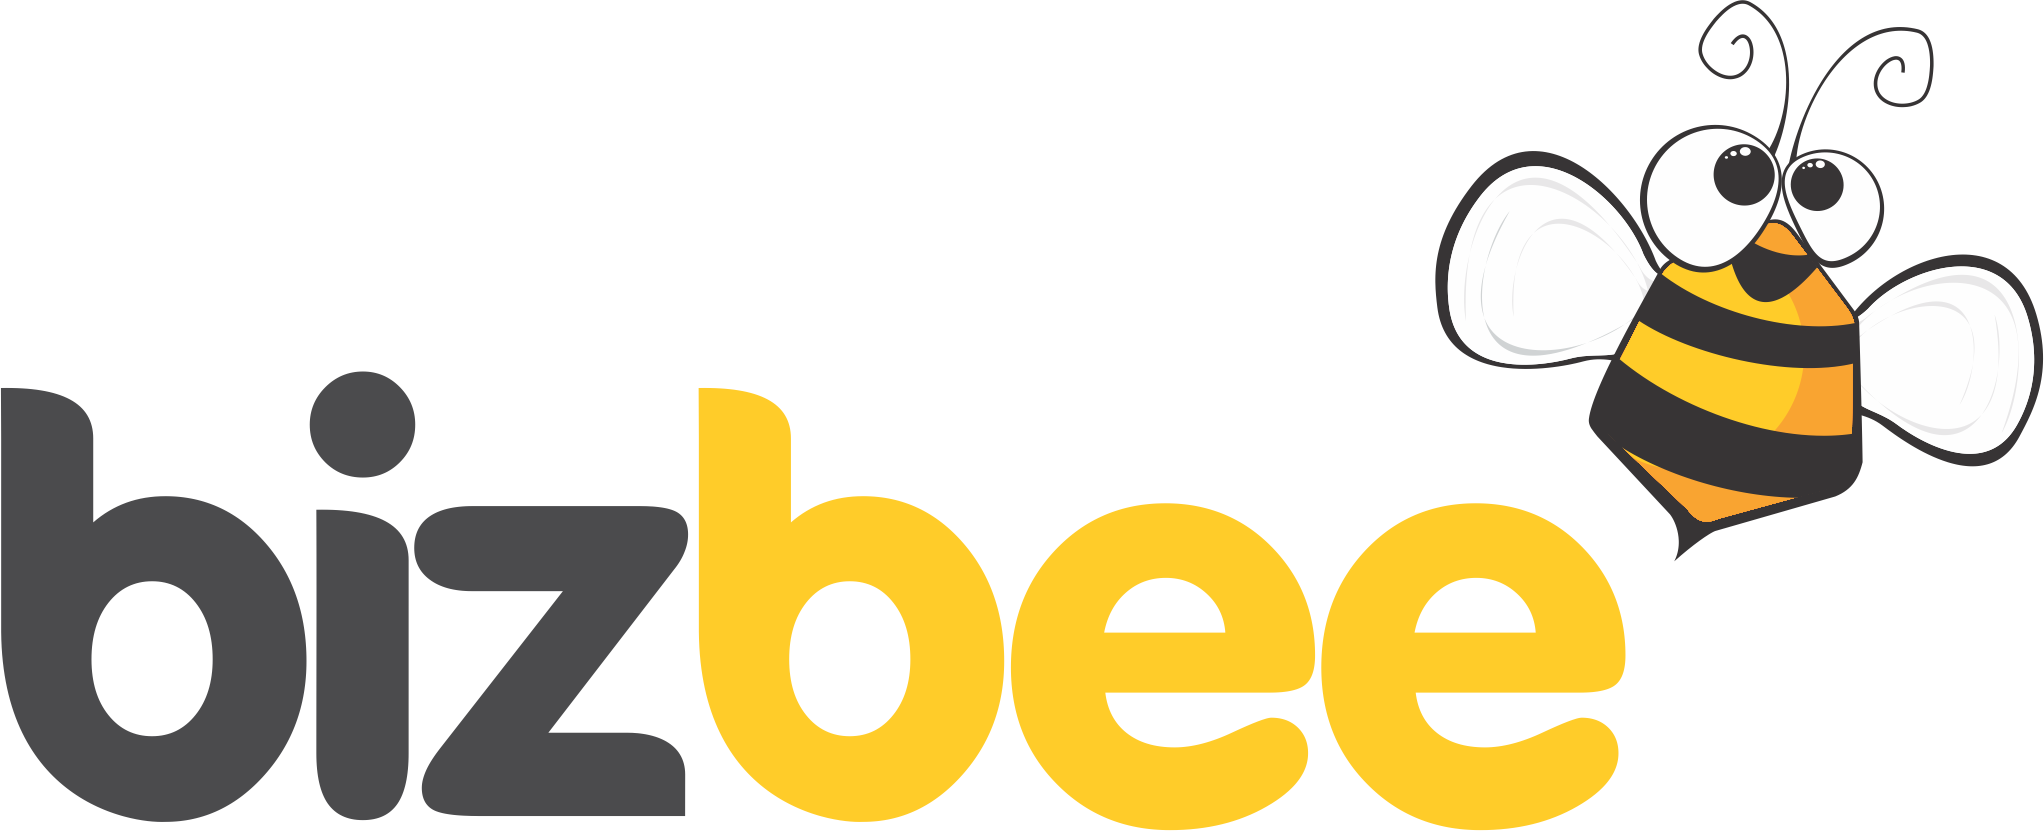 Bizbee